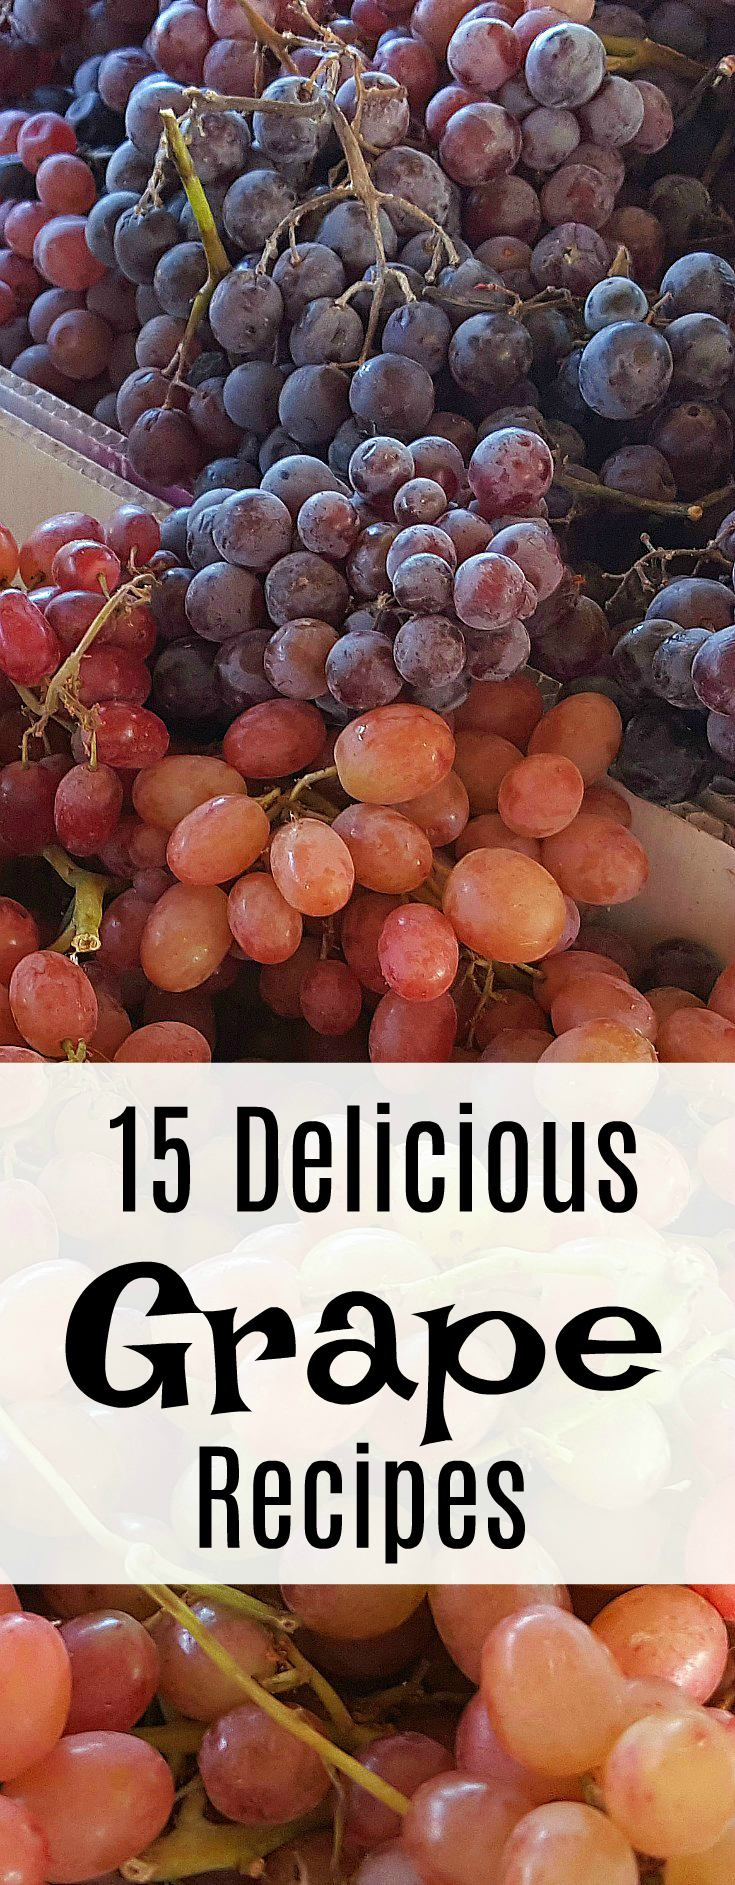 15 Delicious Grape Recipes